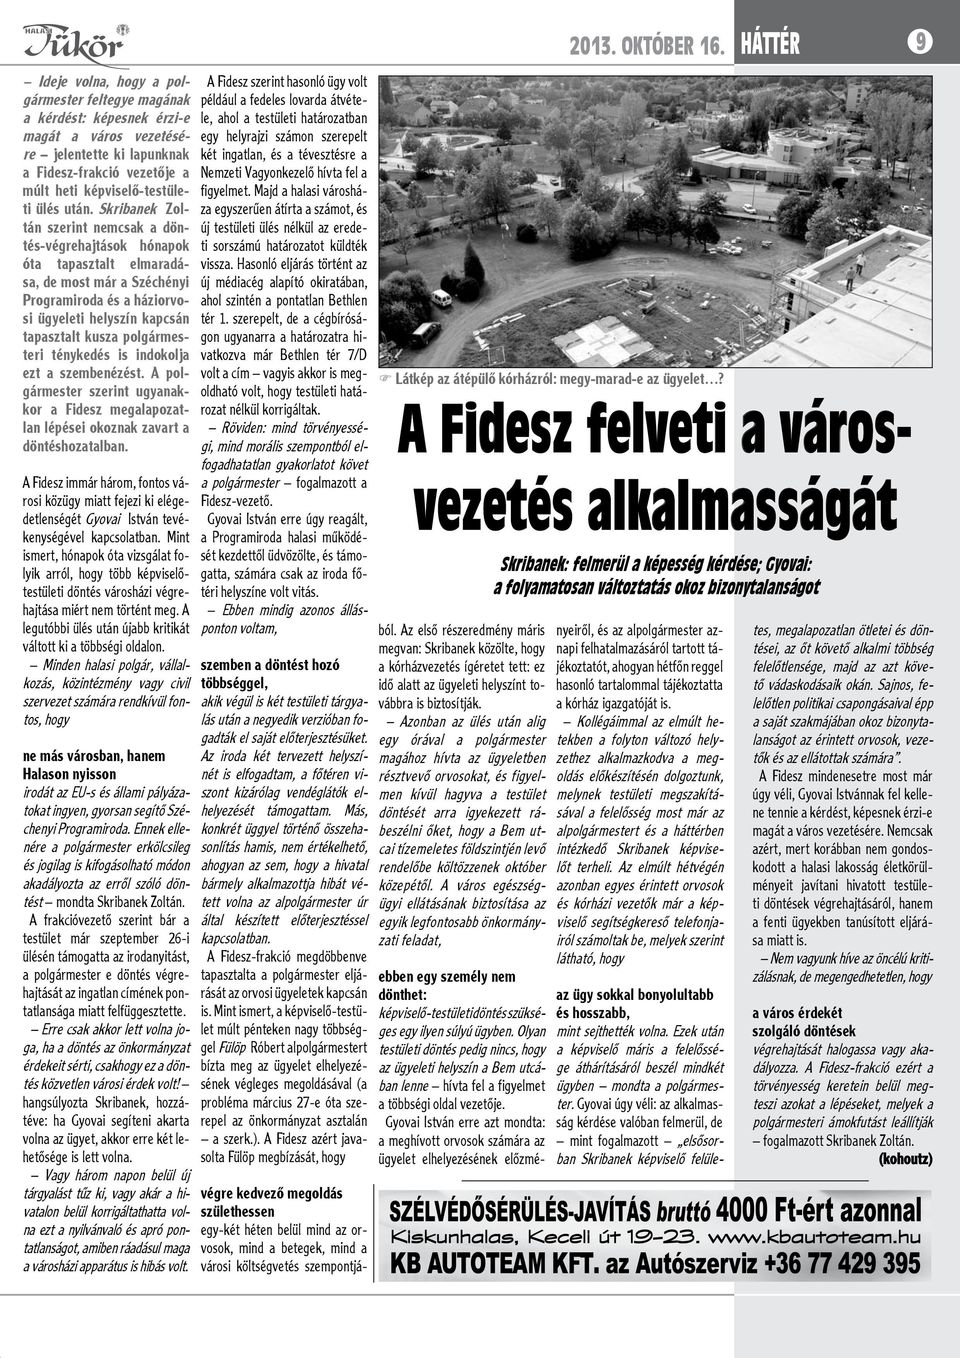 polgármesteri ténykedés is indokolja ezt a szembenézést. A polgármester szerint ugyanakkor a Fidesz megalapozatlan lépései okoznak zavart a döntéshozatalban.